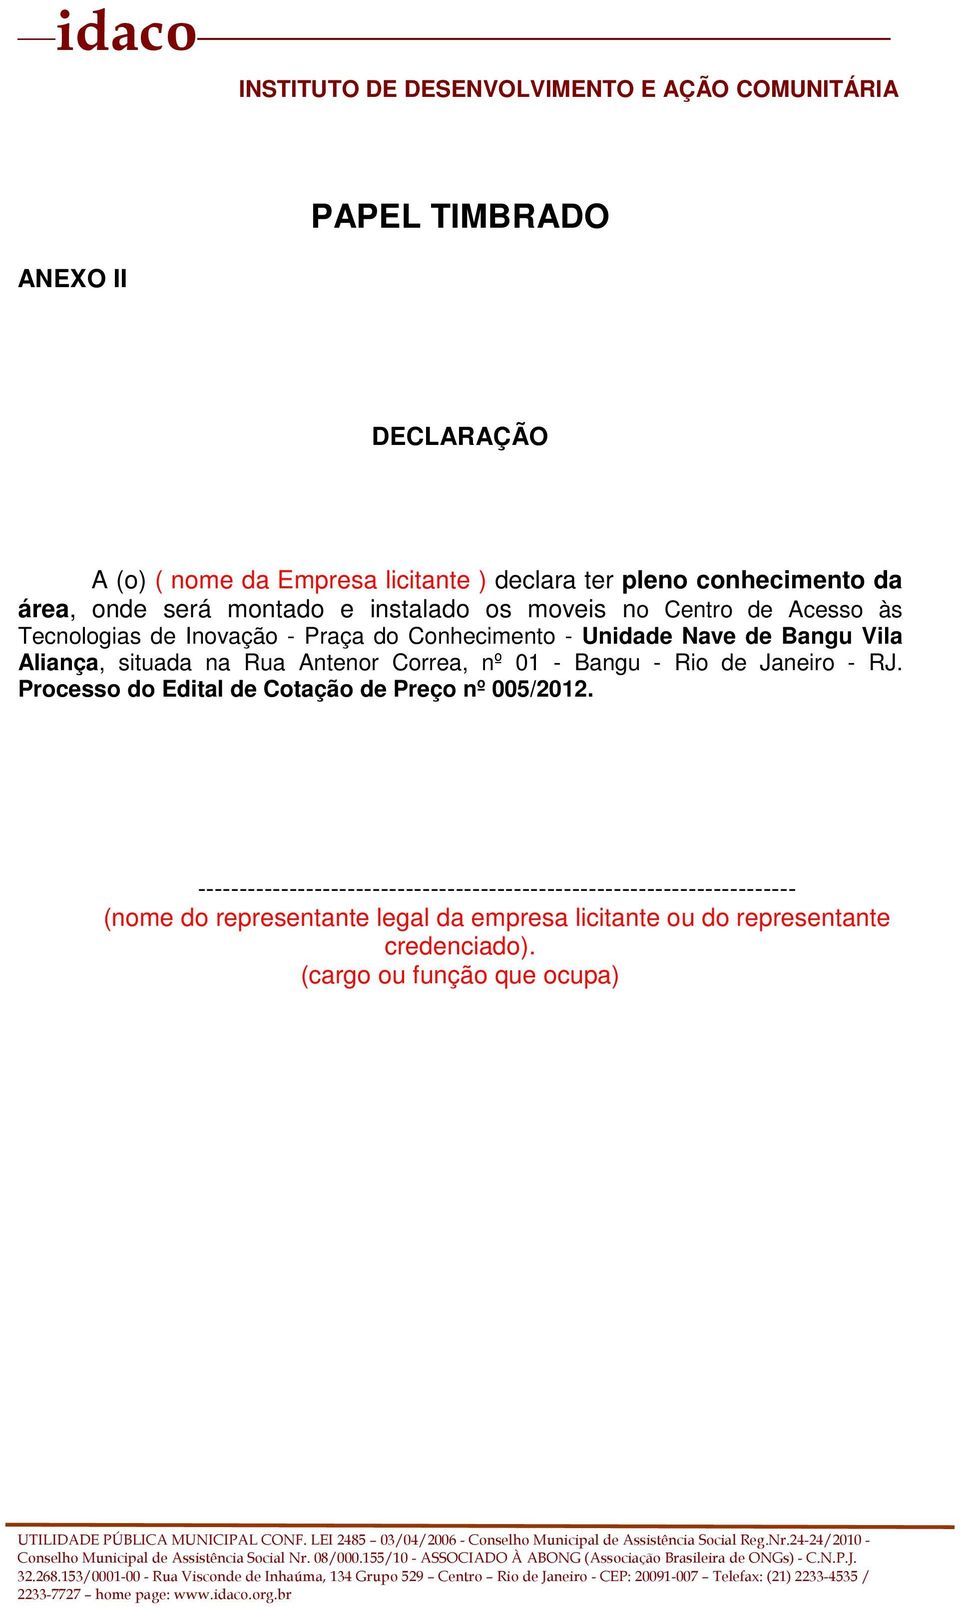 Antenor Correa, nº 01 - Bangu - Rio de Janeiro - RJ. Processo do Edital de Cotação de Preço nº 005/2012.